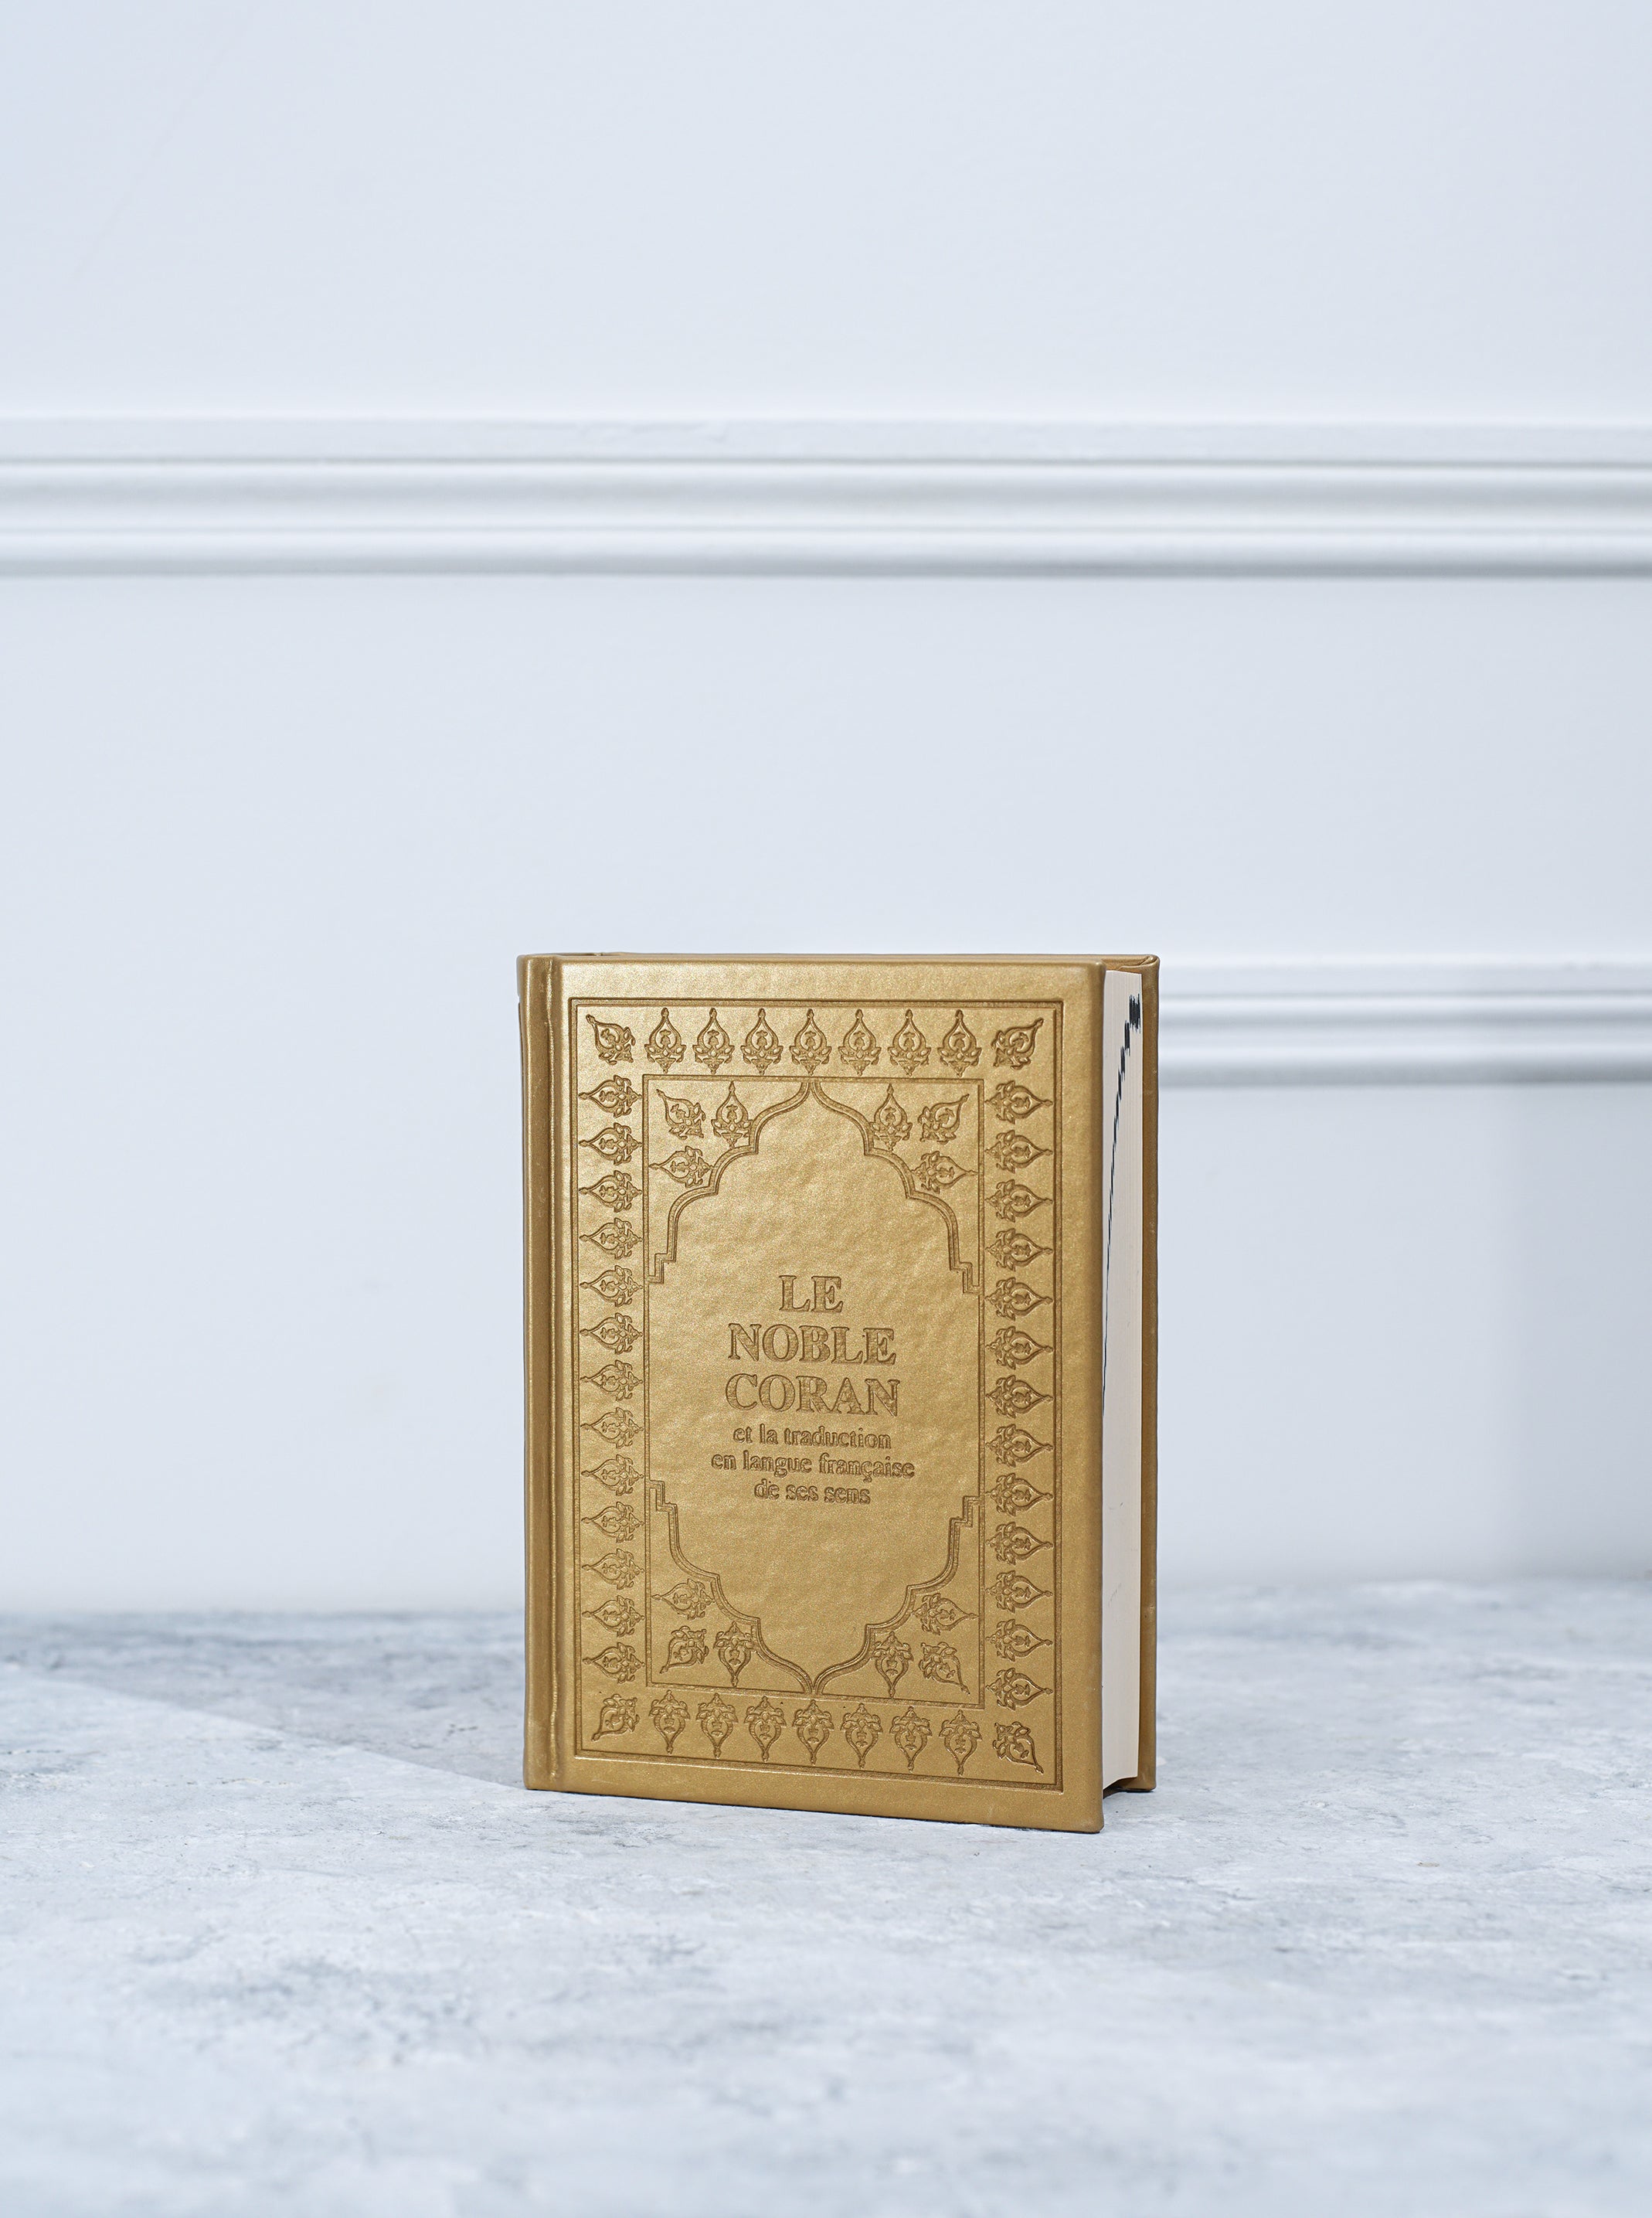 Coran dorée français arabe